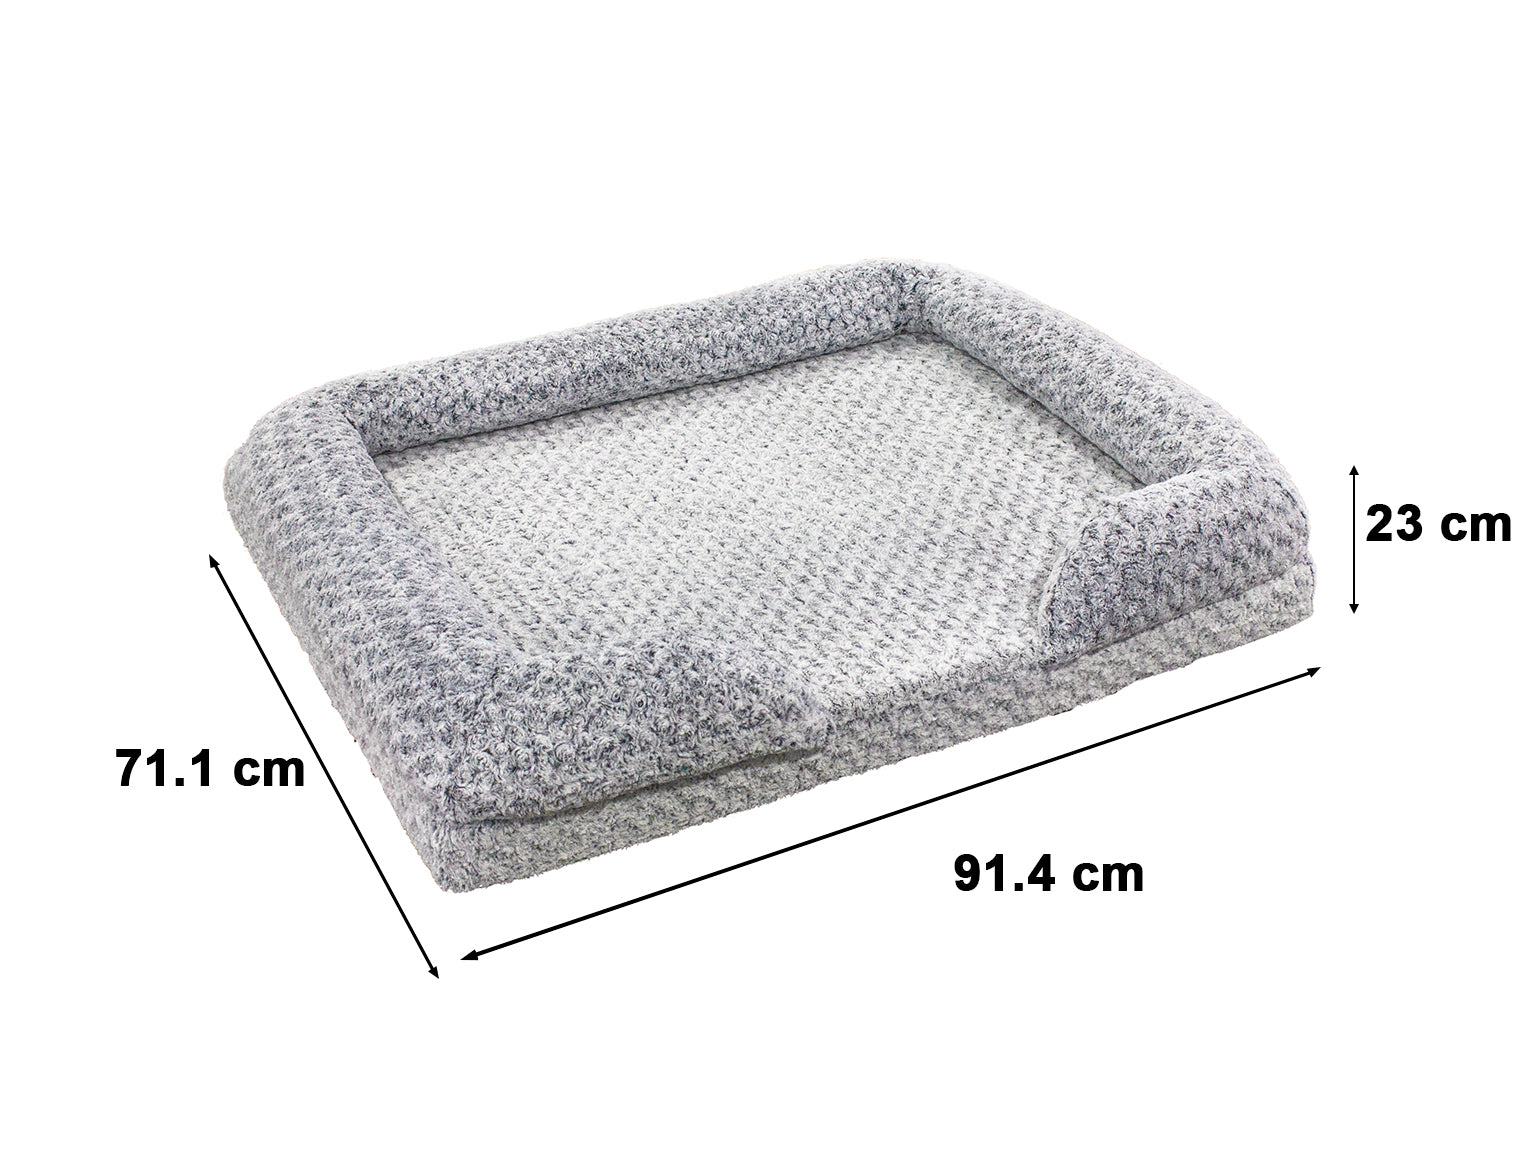 MemFoam Pet Bed B23 Medium